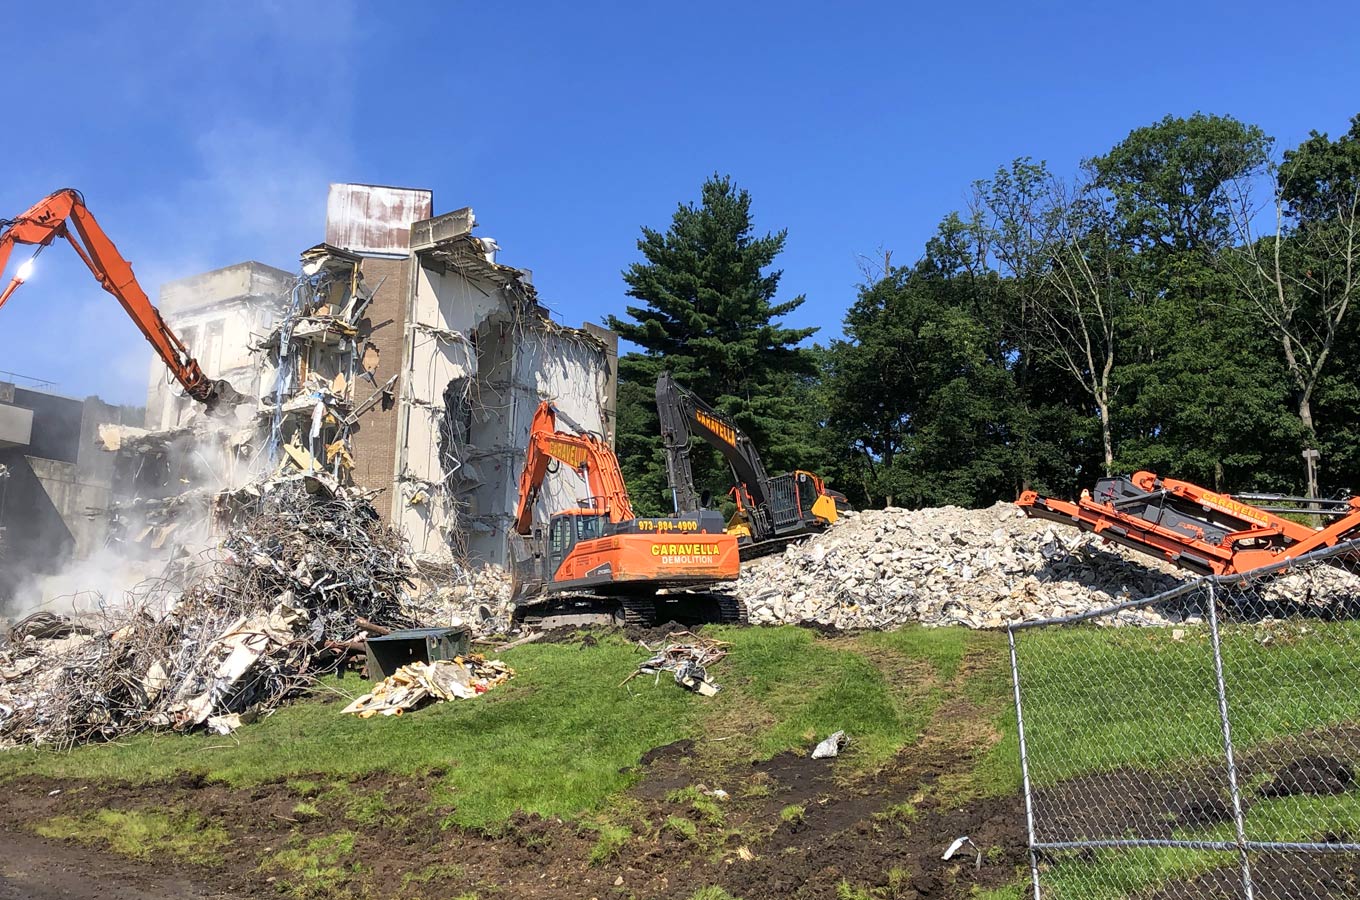 Demolition Services in Morris County, NJ | Caravella Demolition